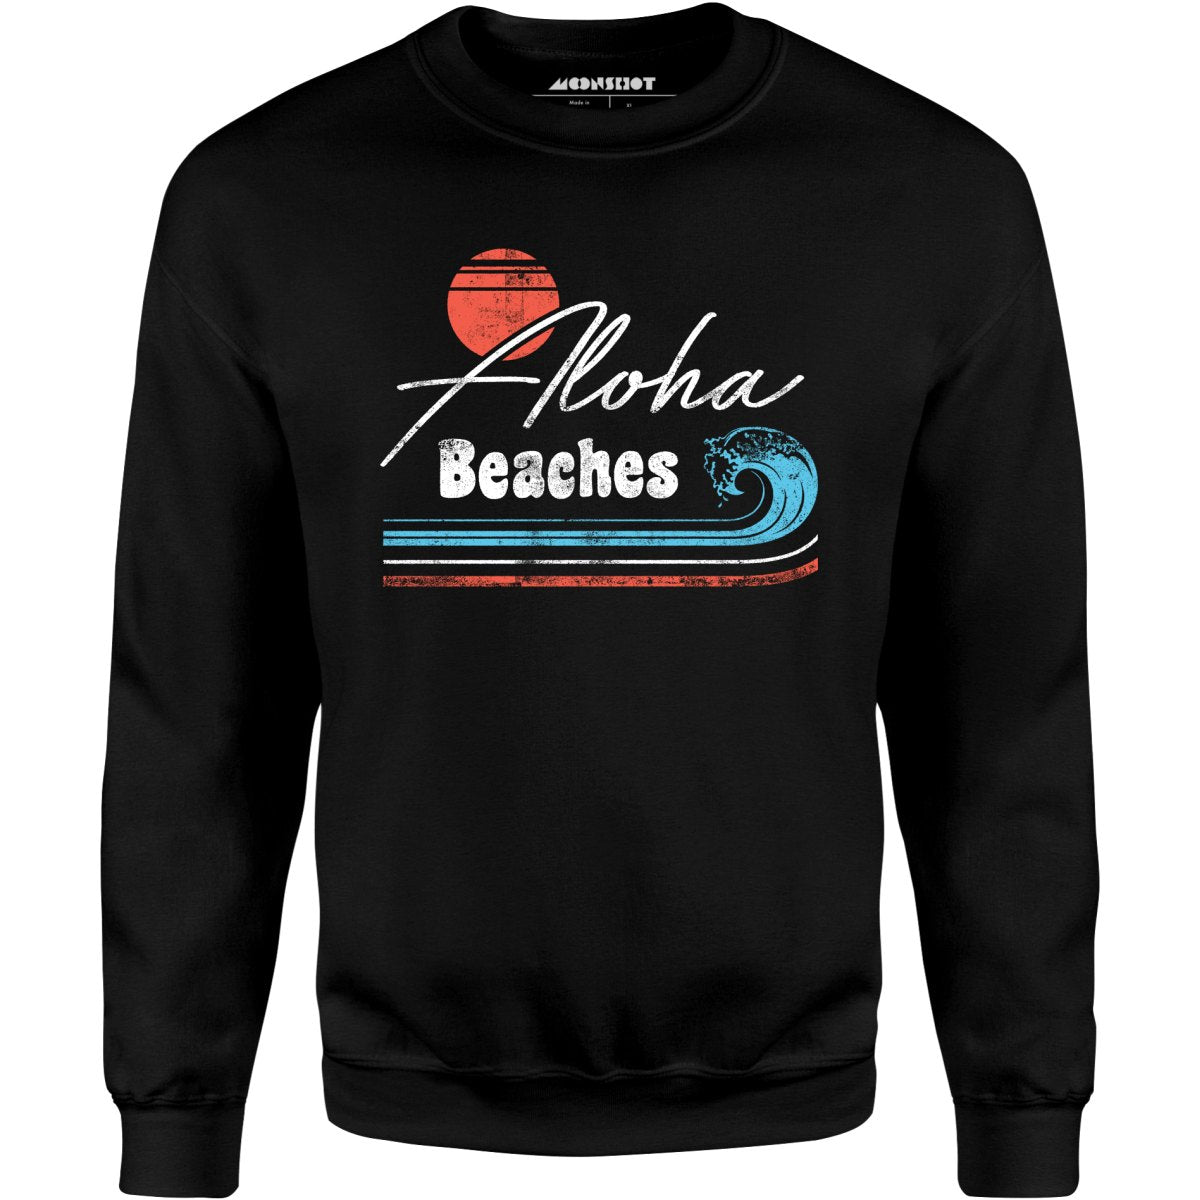 Aloha Beaches - Unisex Sweatshirt